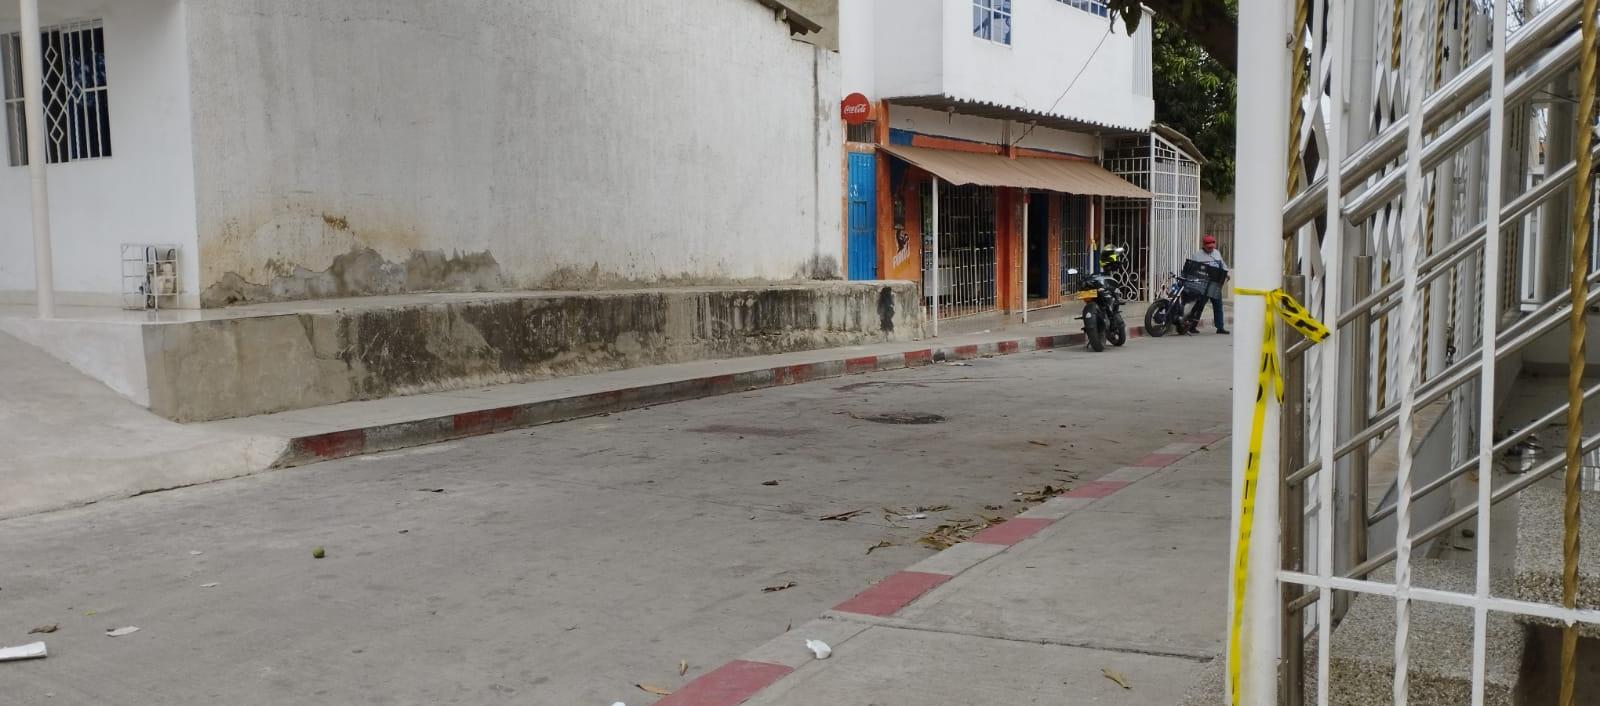 El ataque sicarial ocurrió en esta cuadra del barrio Los Almendros.